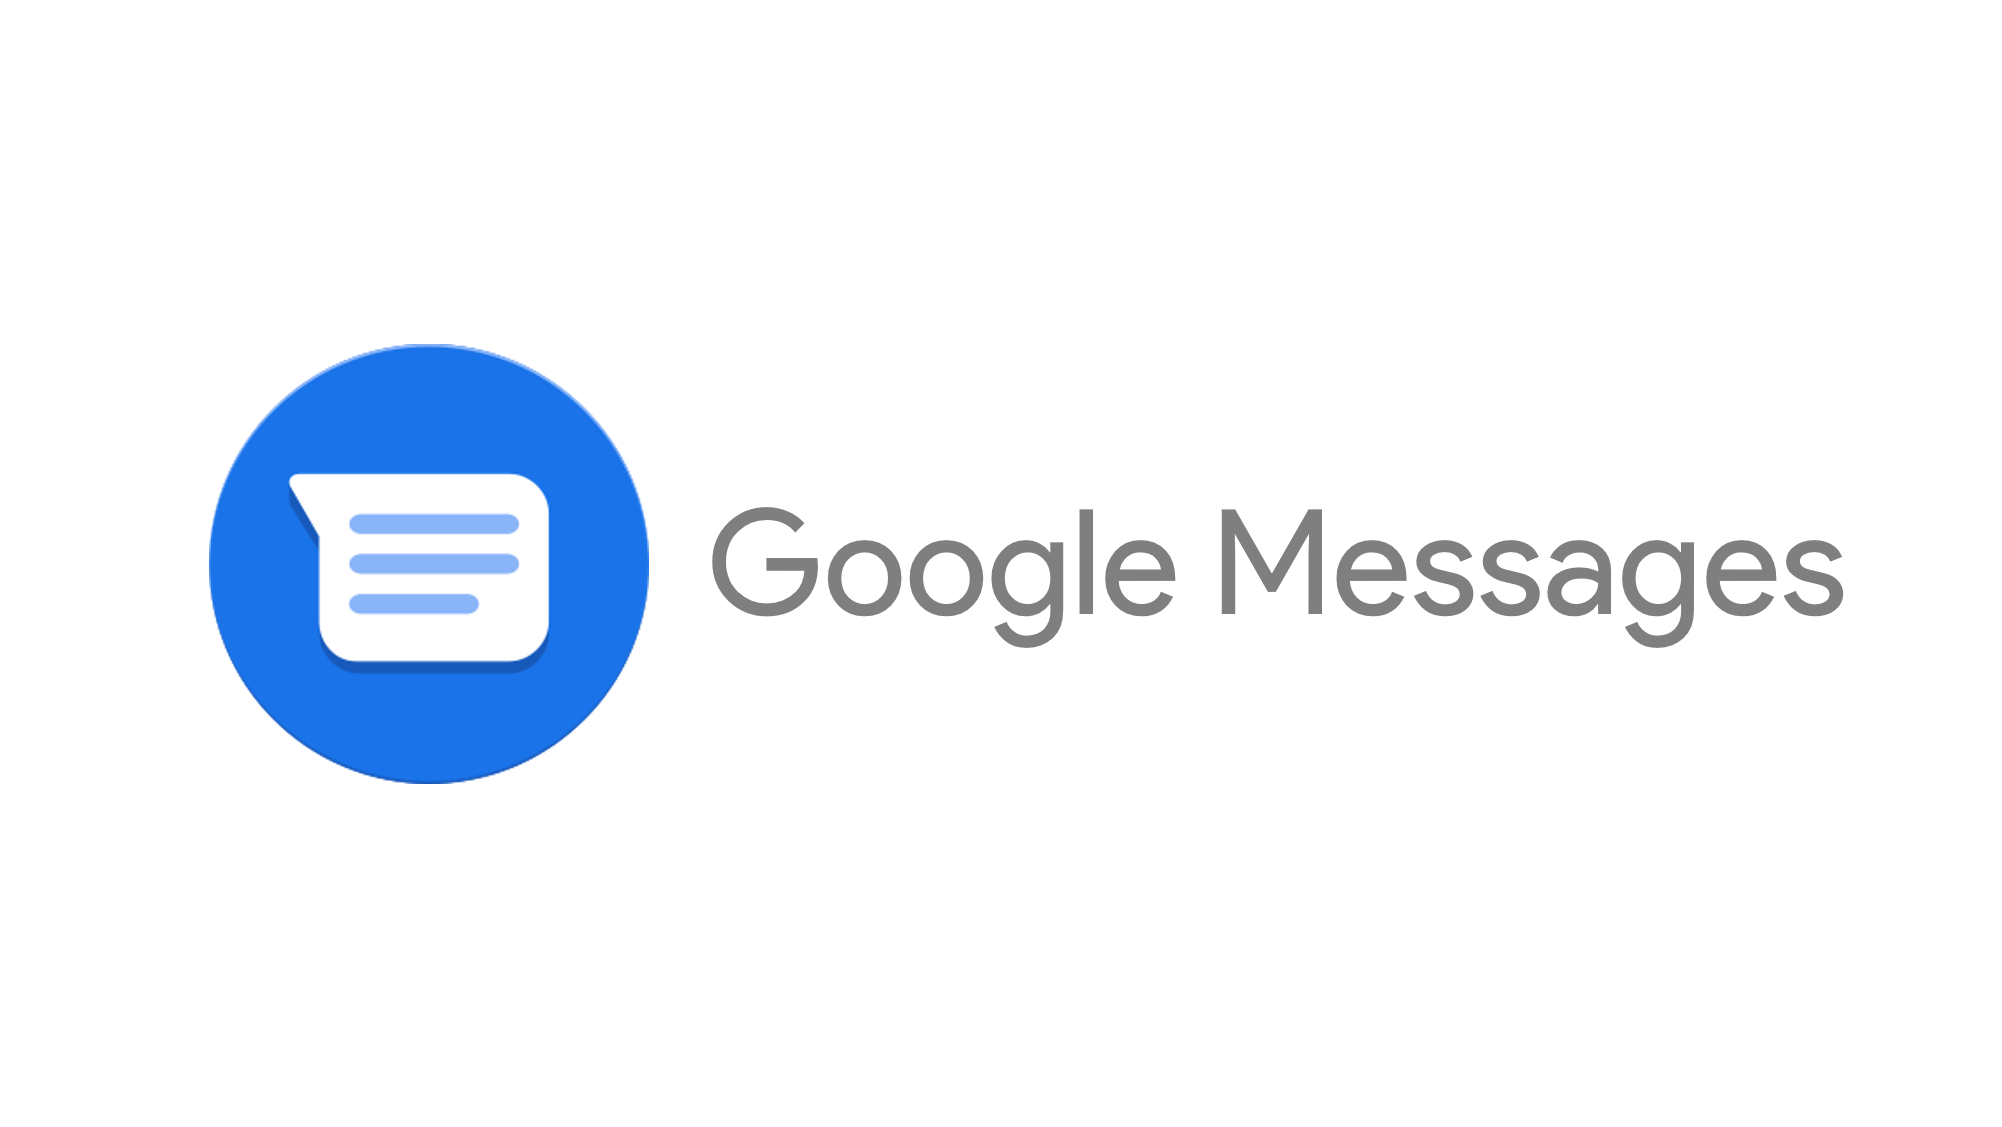 Https message google. Google messages. Гоогле месагес мессагес гугл. Лого сообщения Google. Google messages app.